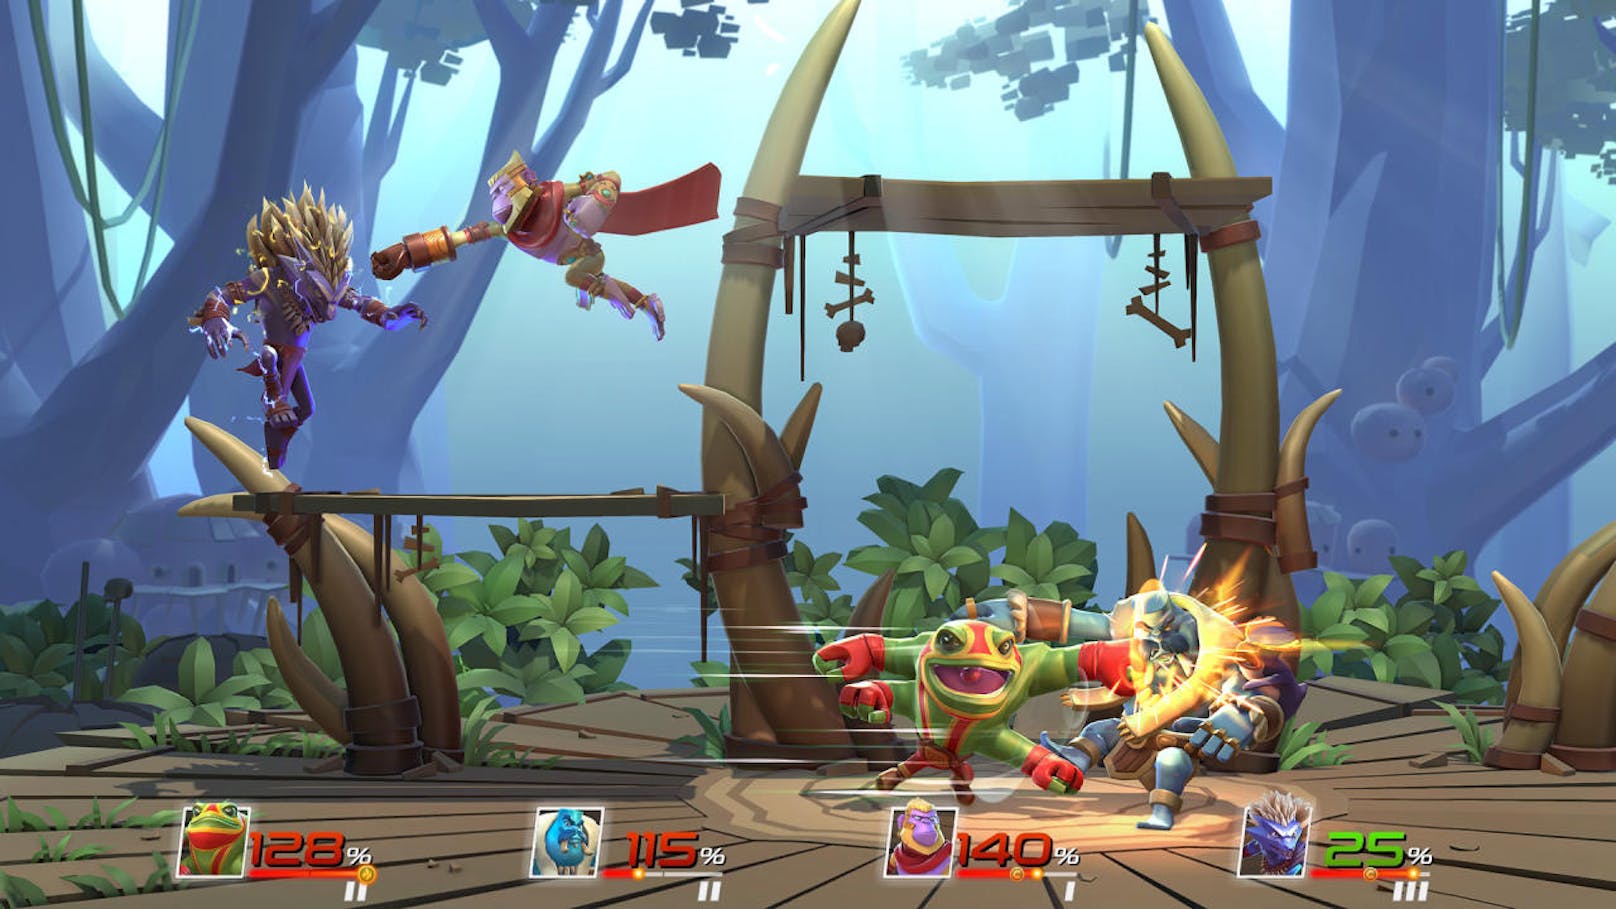 Der Indie-Titel Brawlout positioniert sich als Super Smash Bros.-Klon für alle, die das chaotische Prügel-Gameplay trotz Mangels einer Nintendo-Konsole erleben wollen.